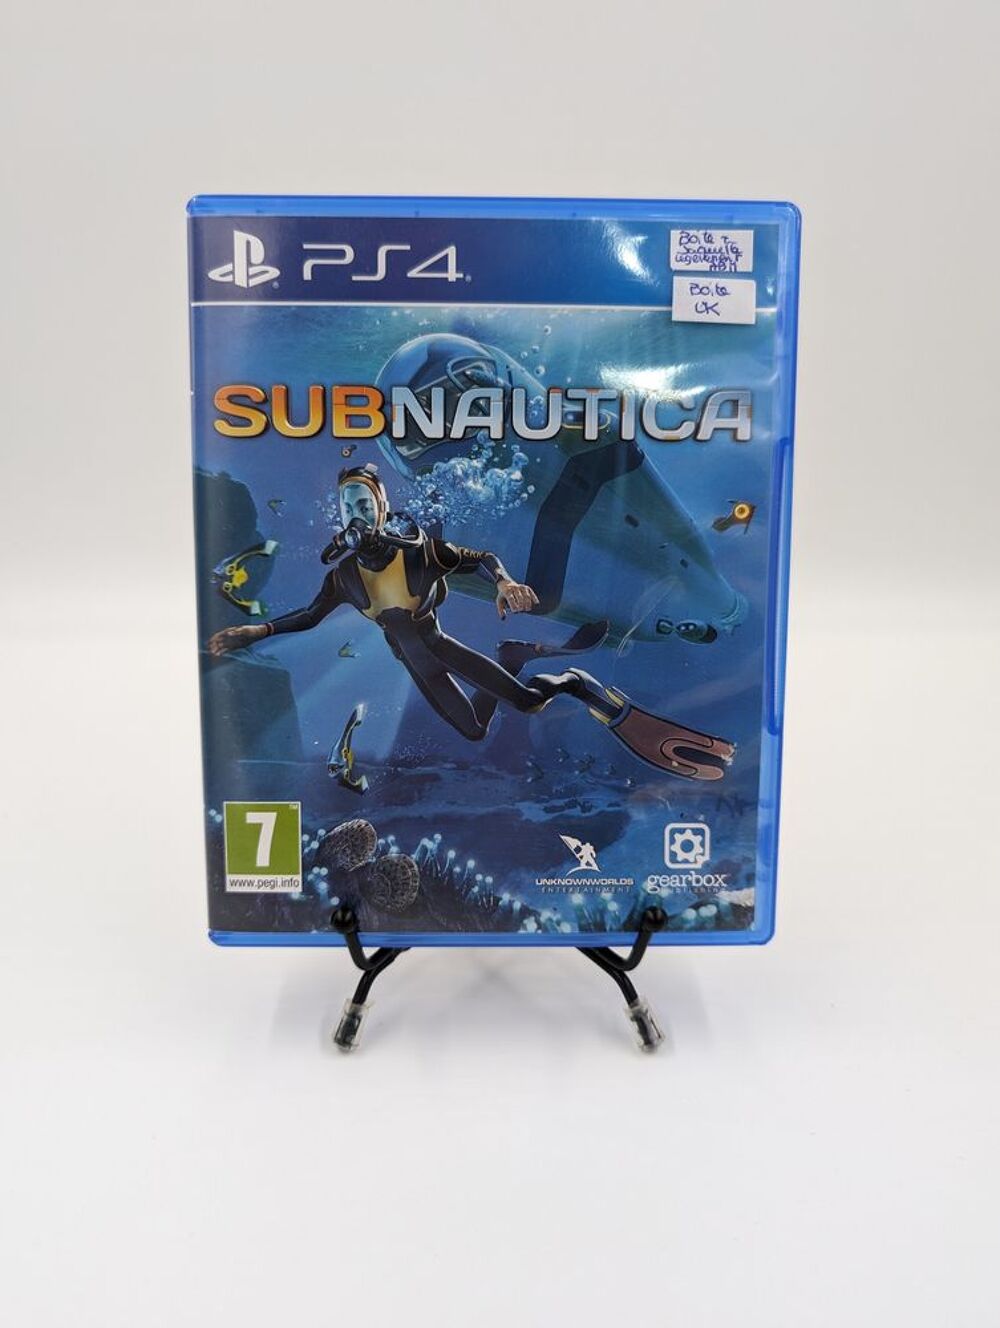 Jeu PS4 Playstation 4 Subnautica sans notices (boite UK) Consoles et jeux vidos